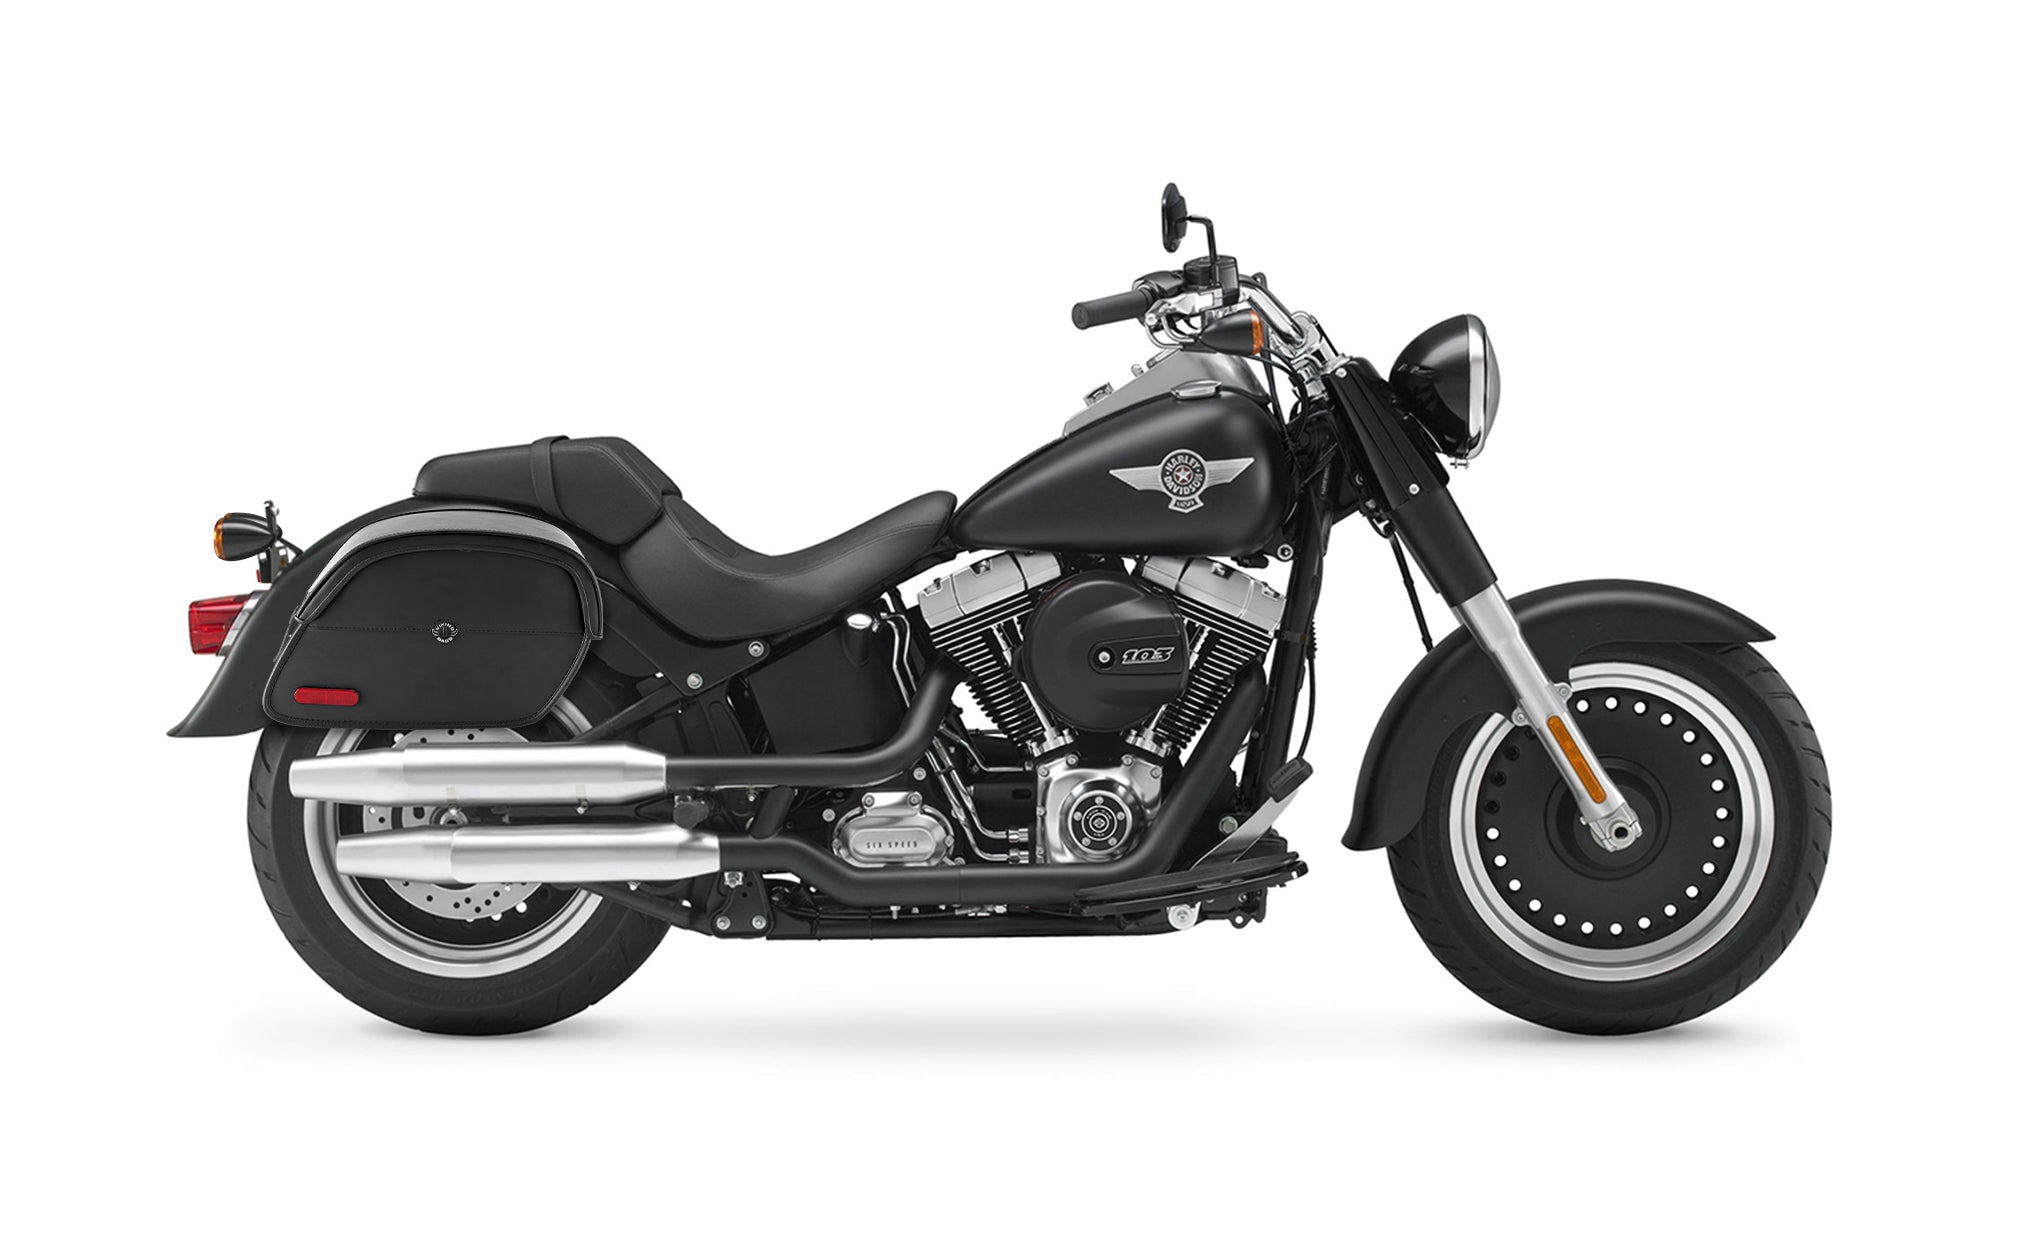 Viking California Large Leather Motorcycle Saddlebags For Harley Davidson Softail Fat Boy Lo Flstfb on Bike Photo @expand